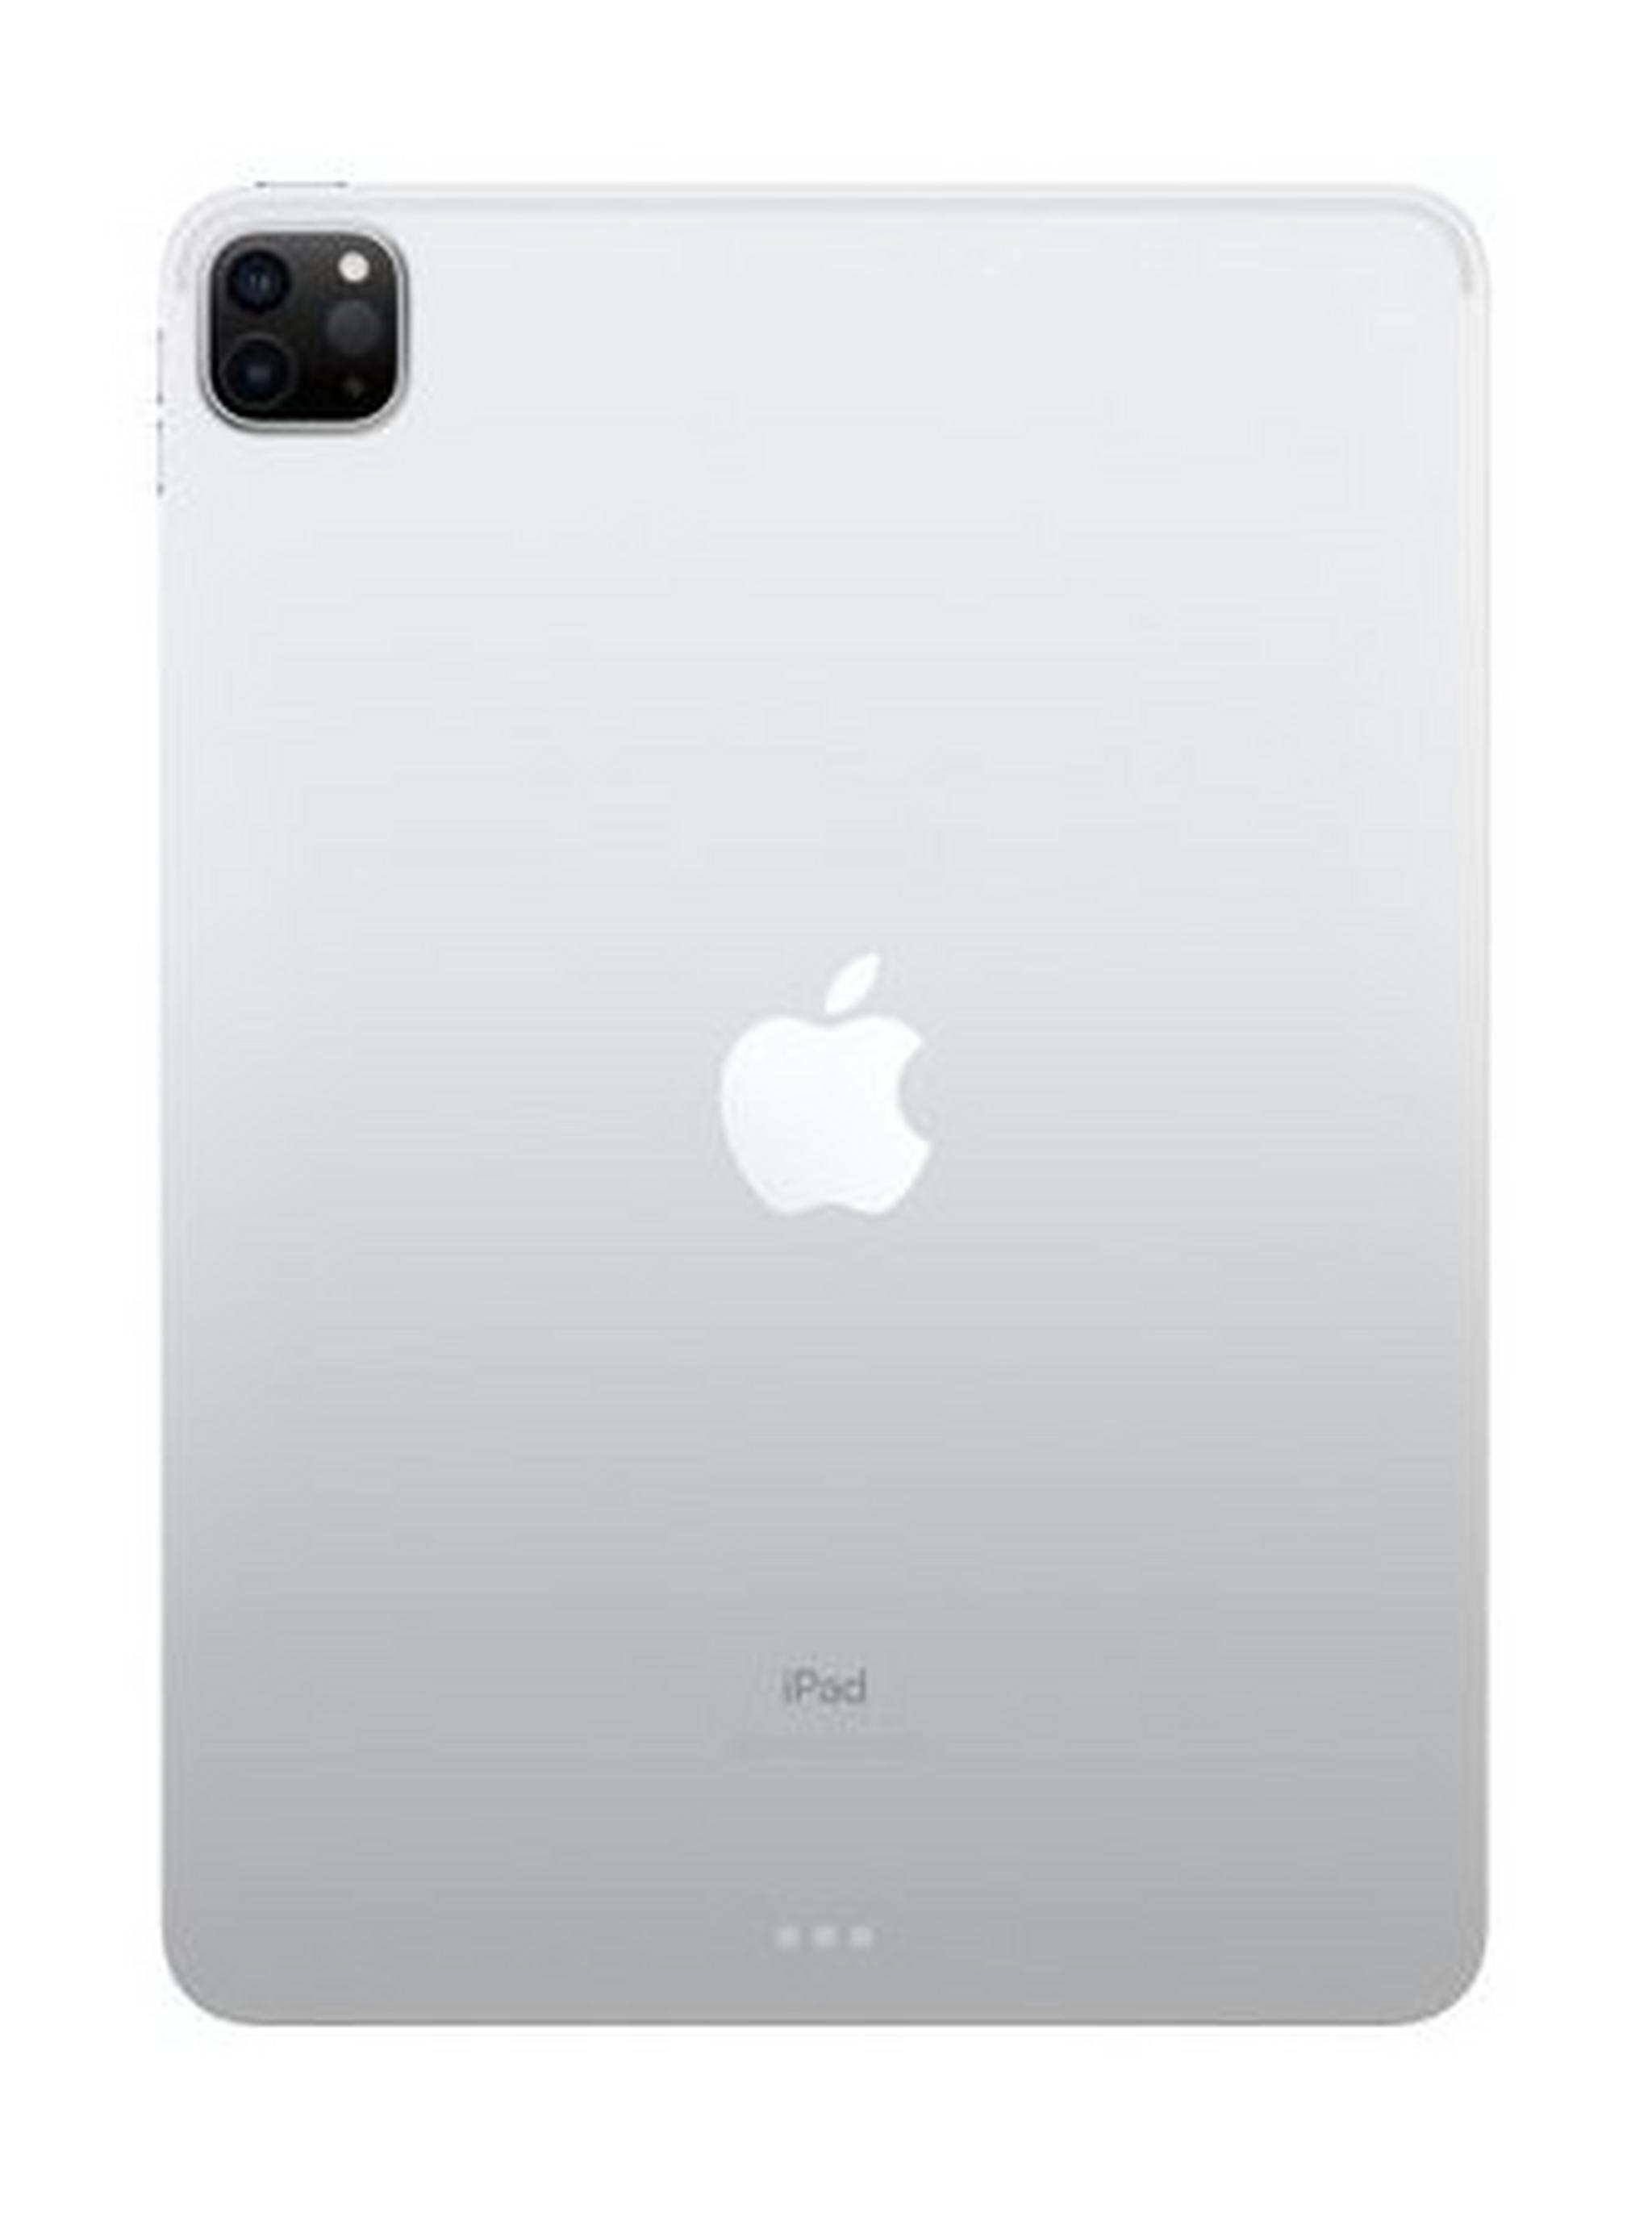 Apple IPad Pro (2020) 11-inch 512GB WiFi – Silver